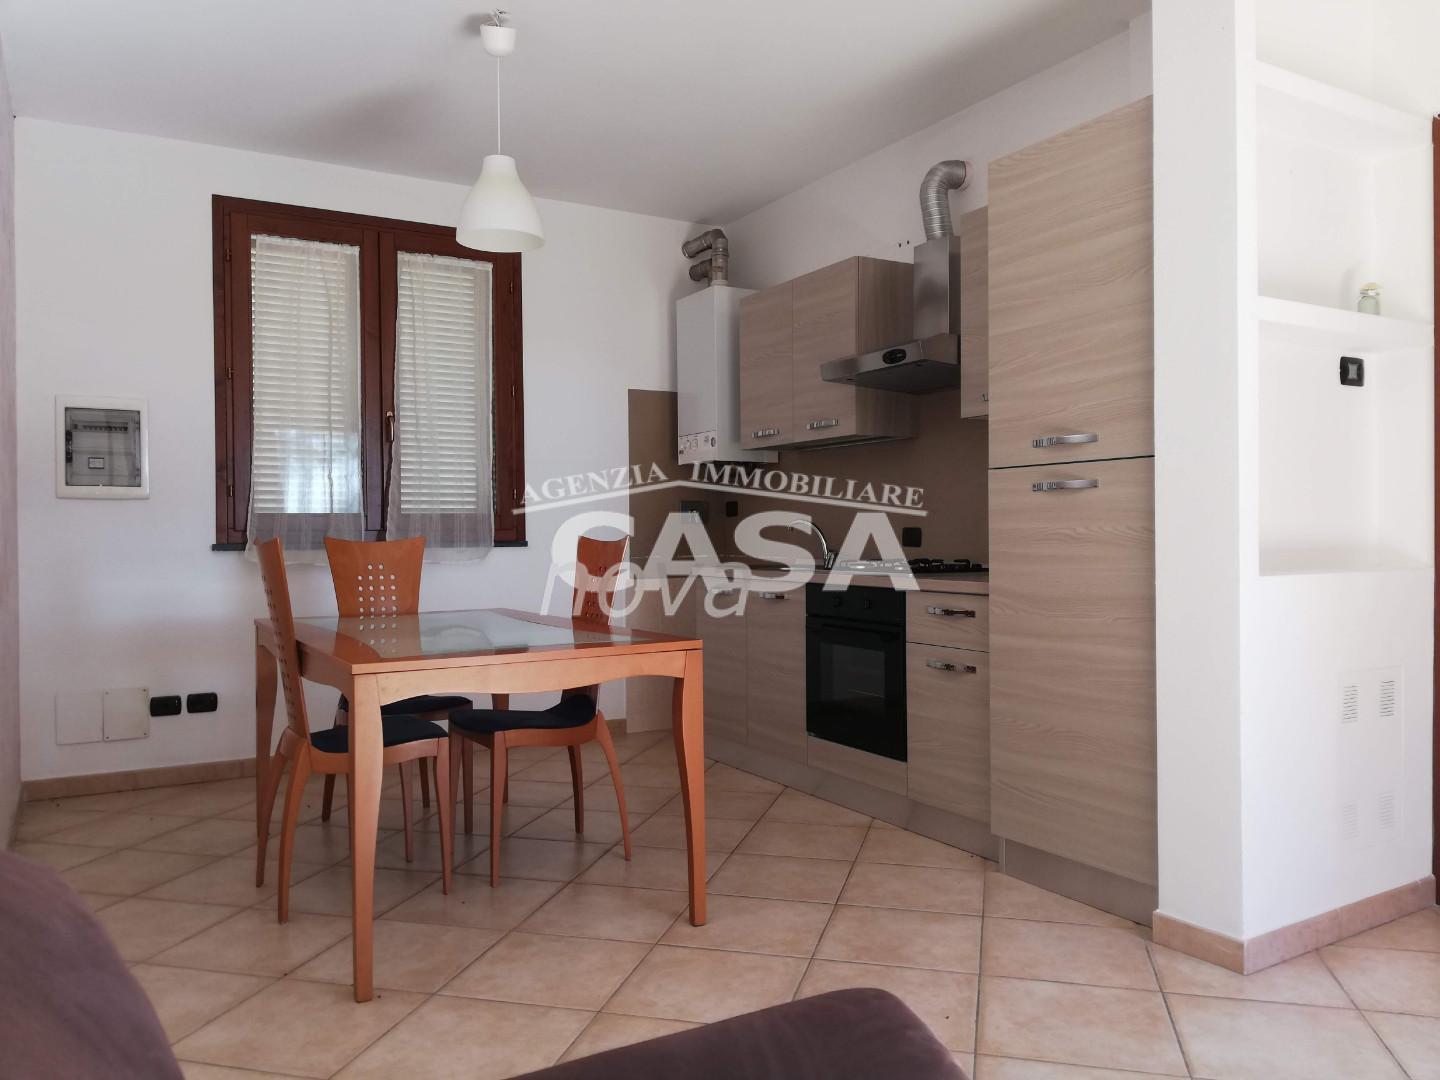 Appartamento in vendita a Santa Maria a Monte, 3 locali, prezzo € 117.000 | PortaleAgenzieImmobiliari.it